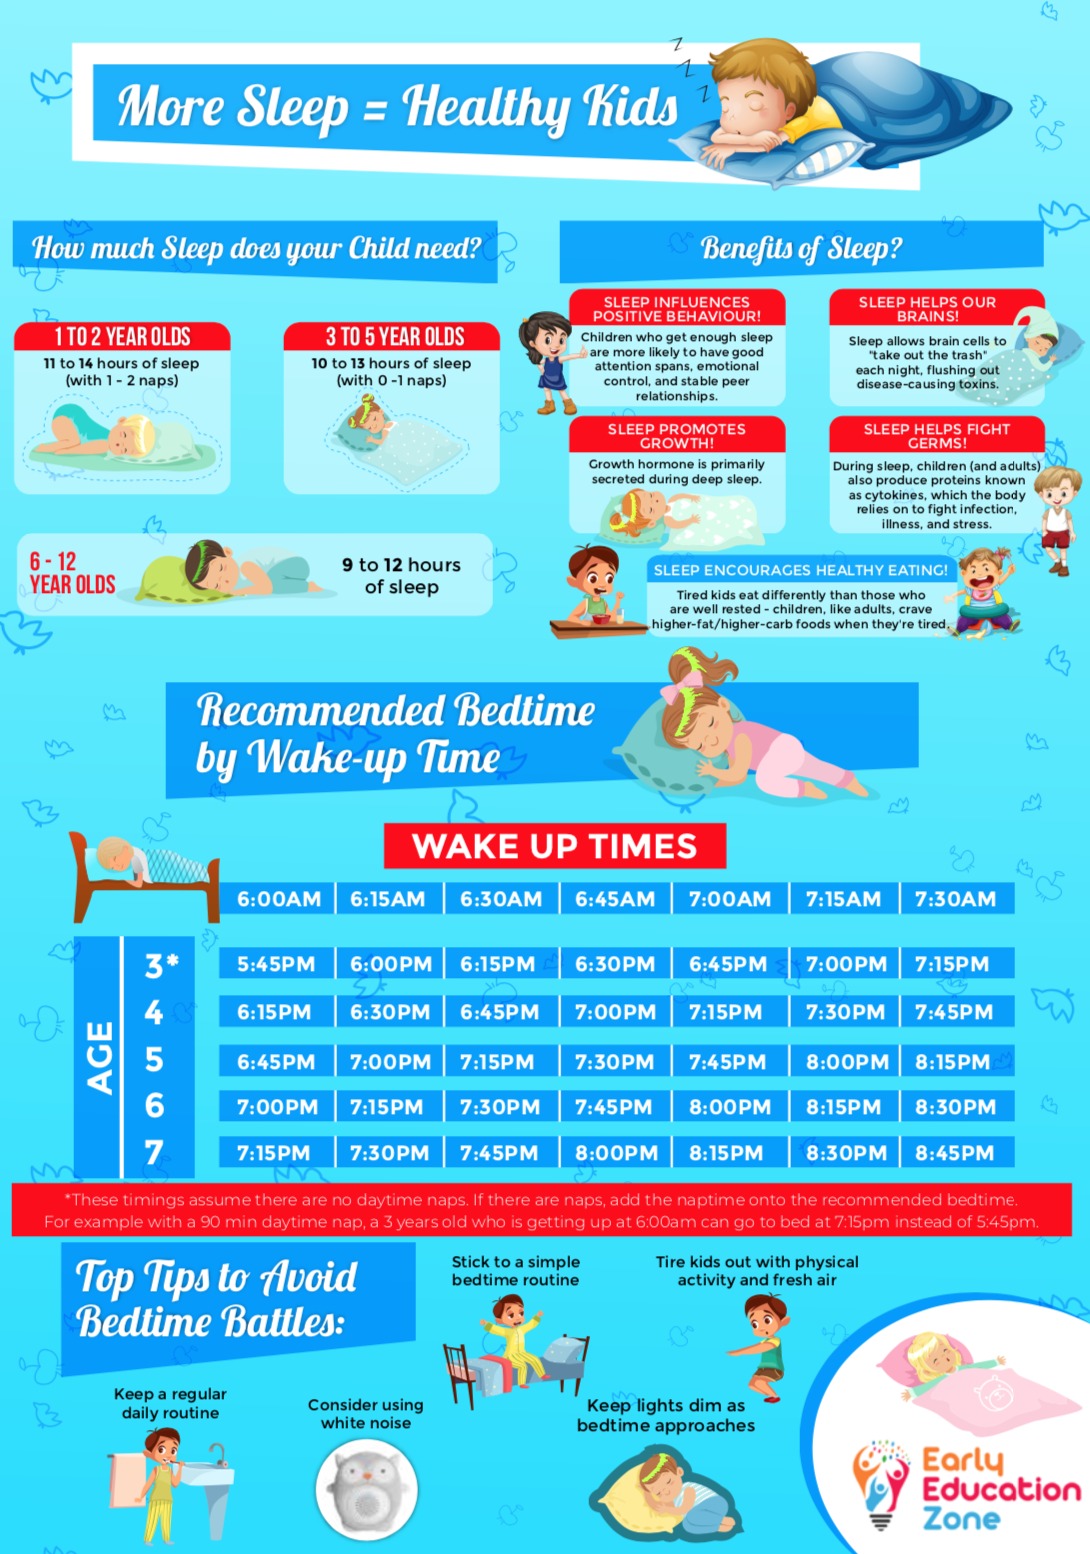 3 Tips for Better Sleep Infographic